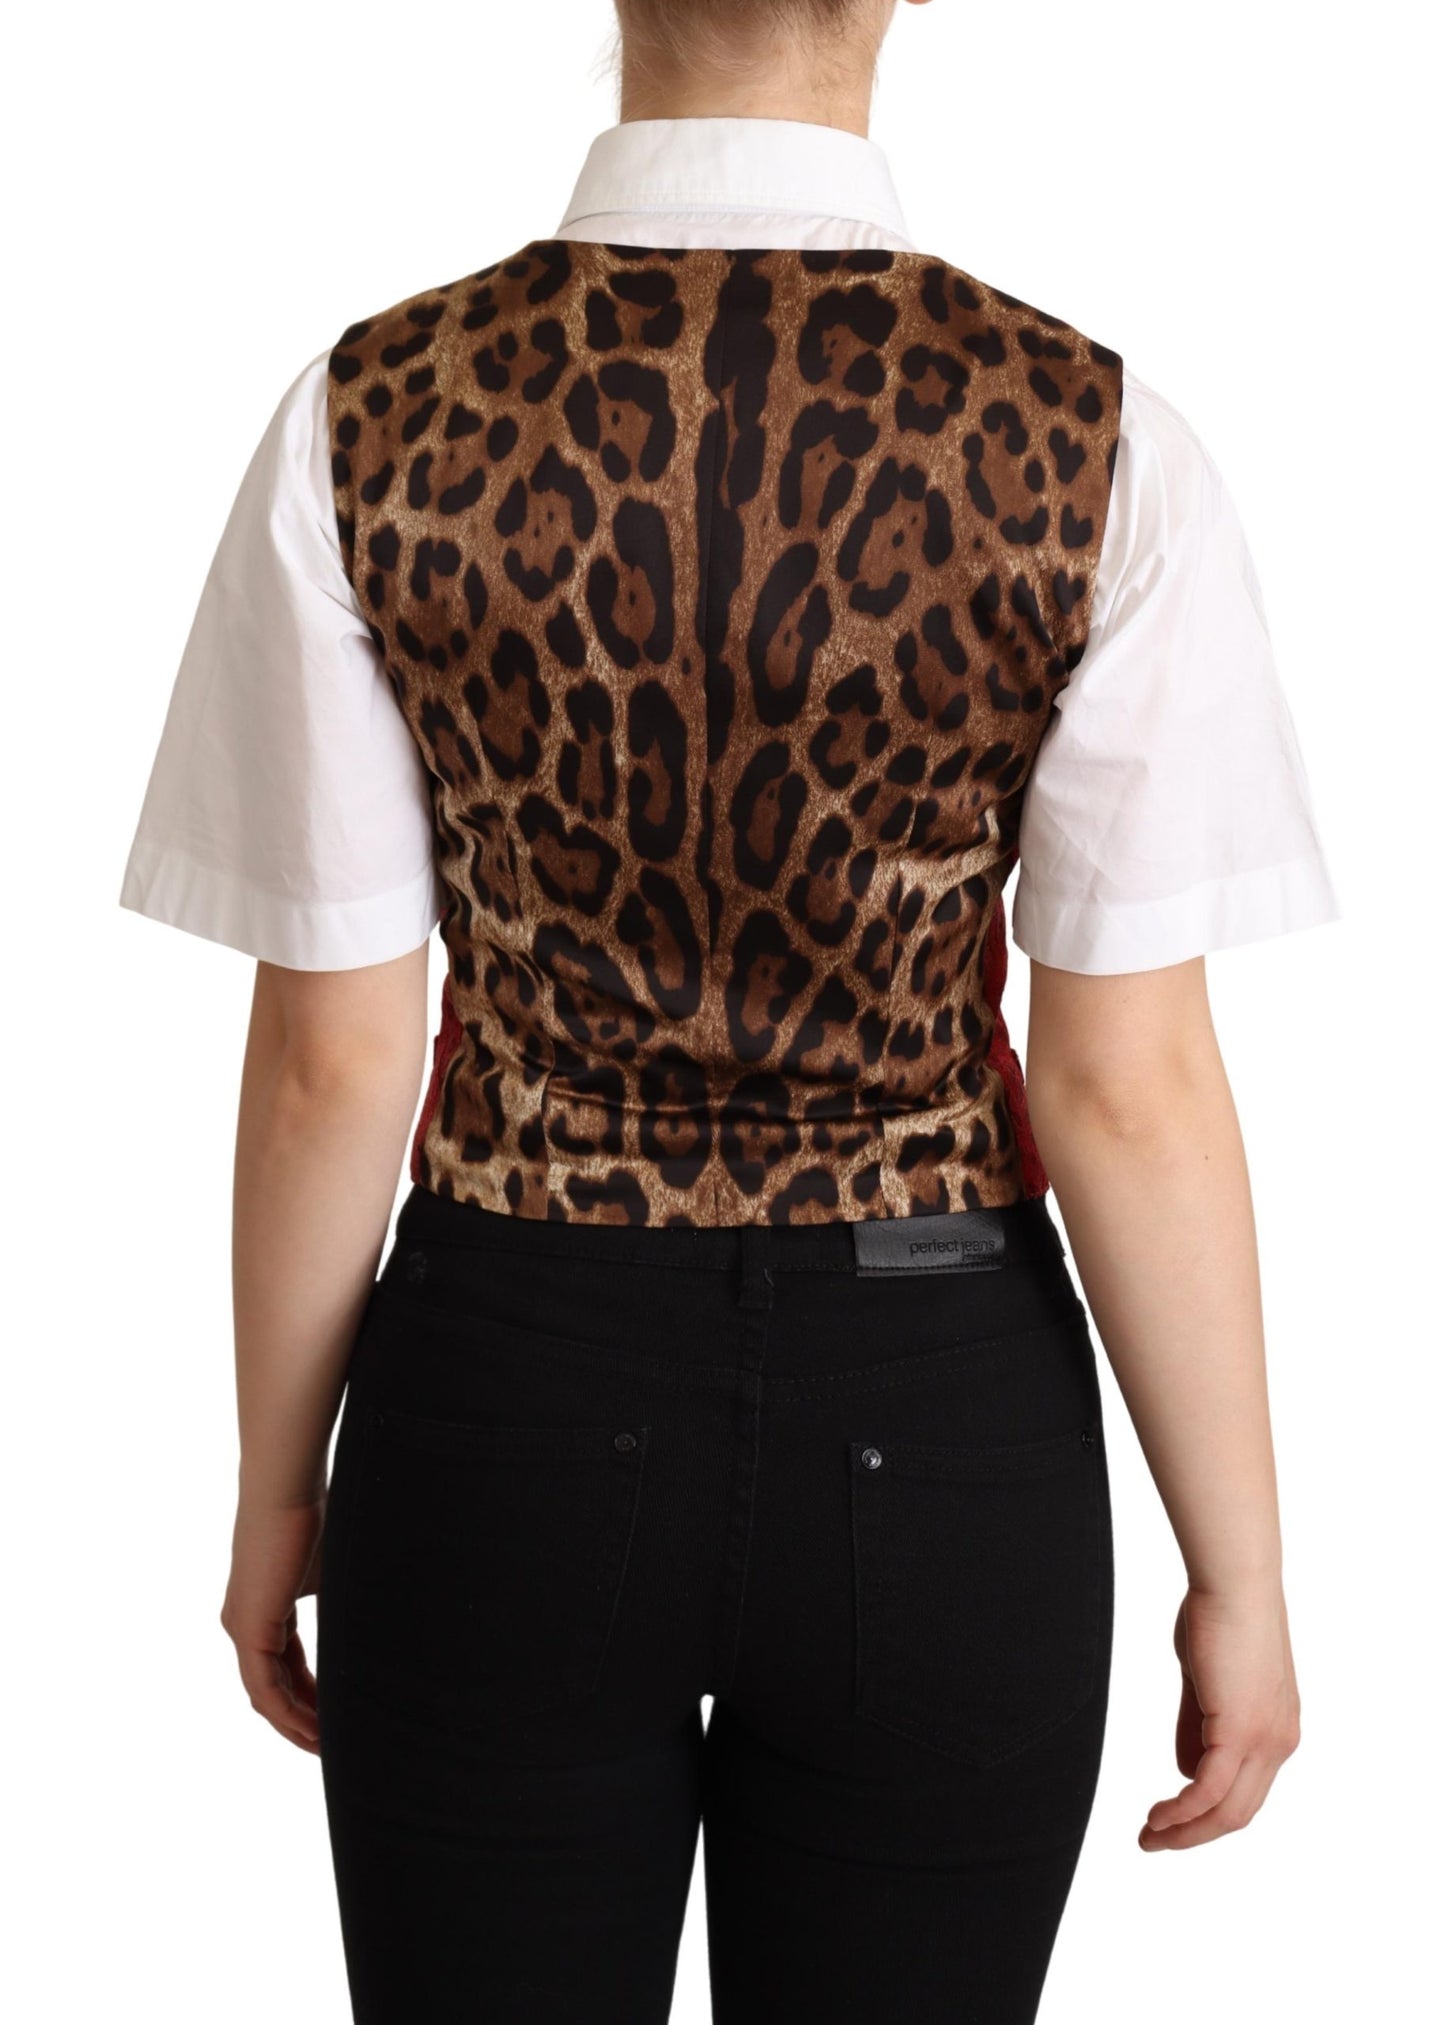 Red Brocade Leopard Print Waistcoat Vest